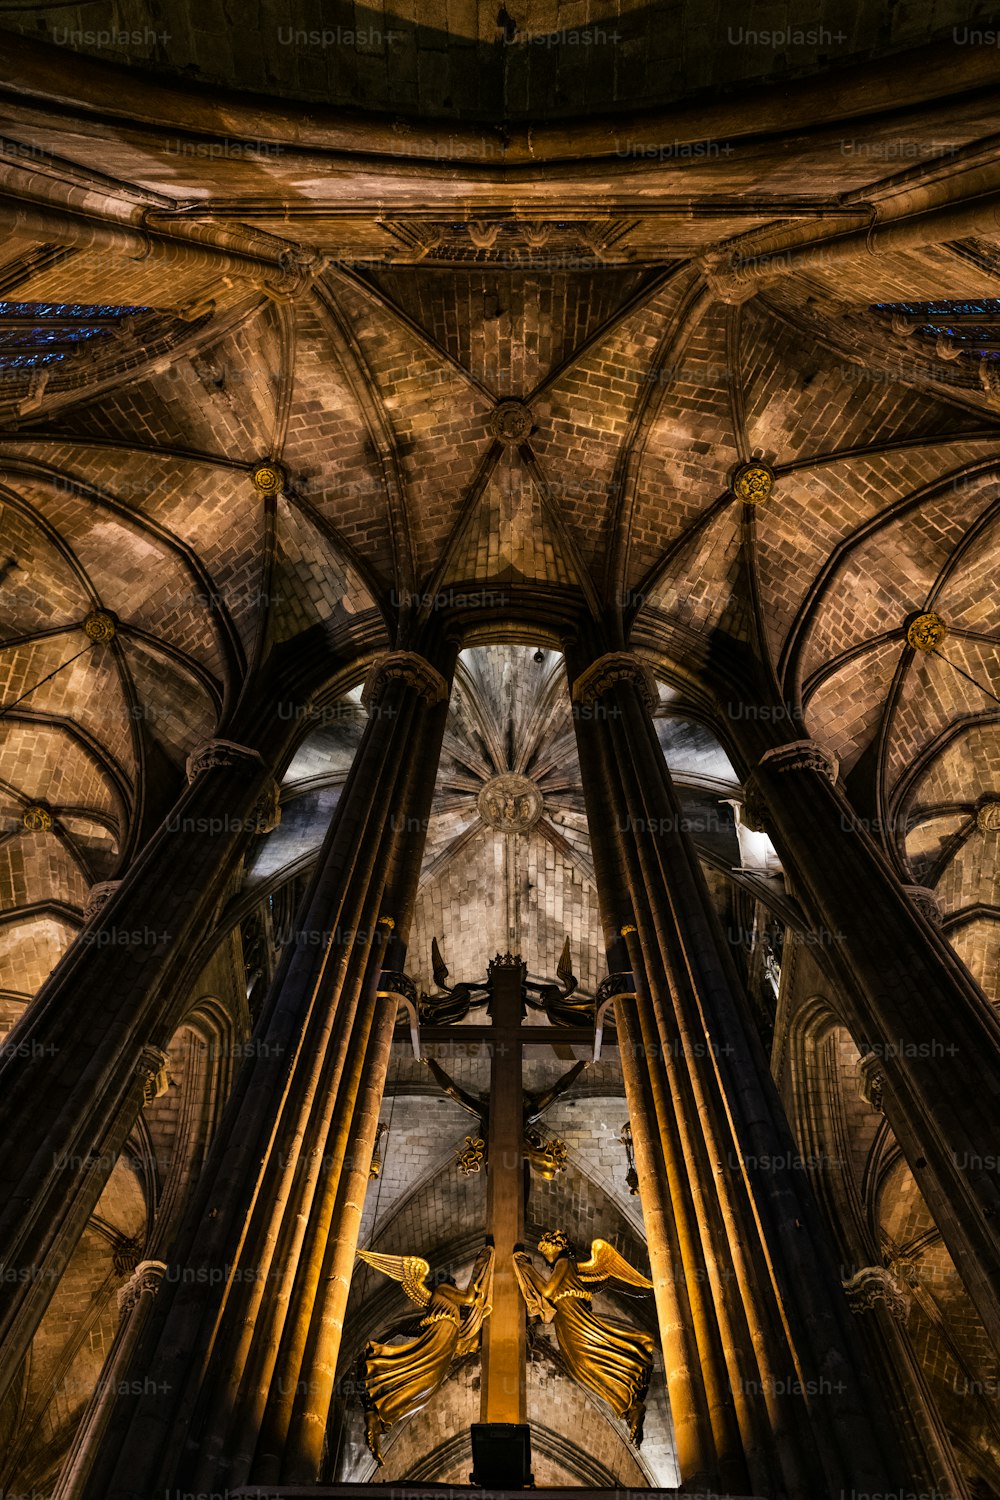 바르셀로나의 고딕 지구 중심부에 위치한 La Seu라고도 알려진 바르셀로나의 고딕 양식의 대성당 내부보기.